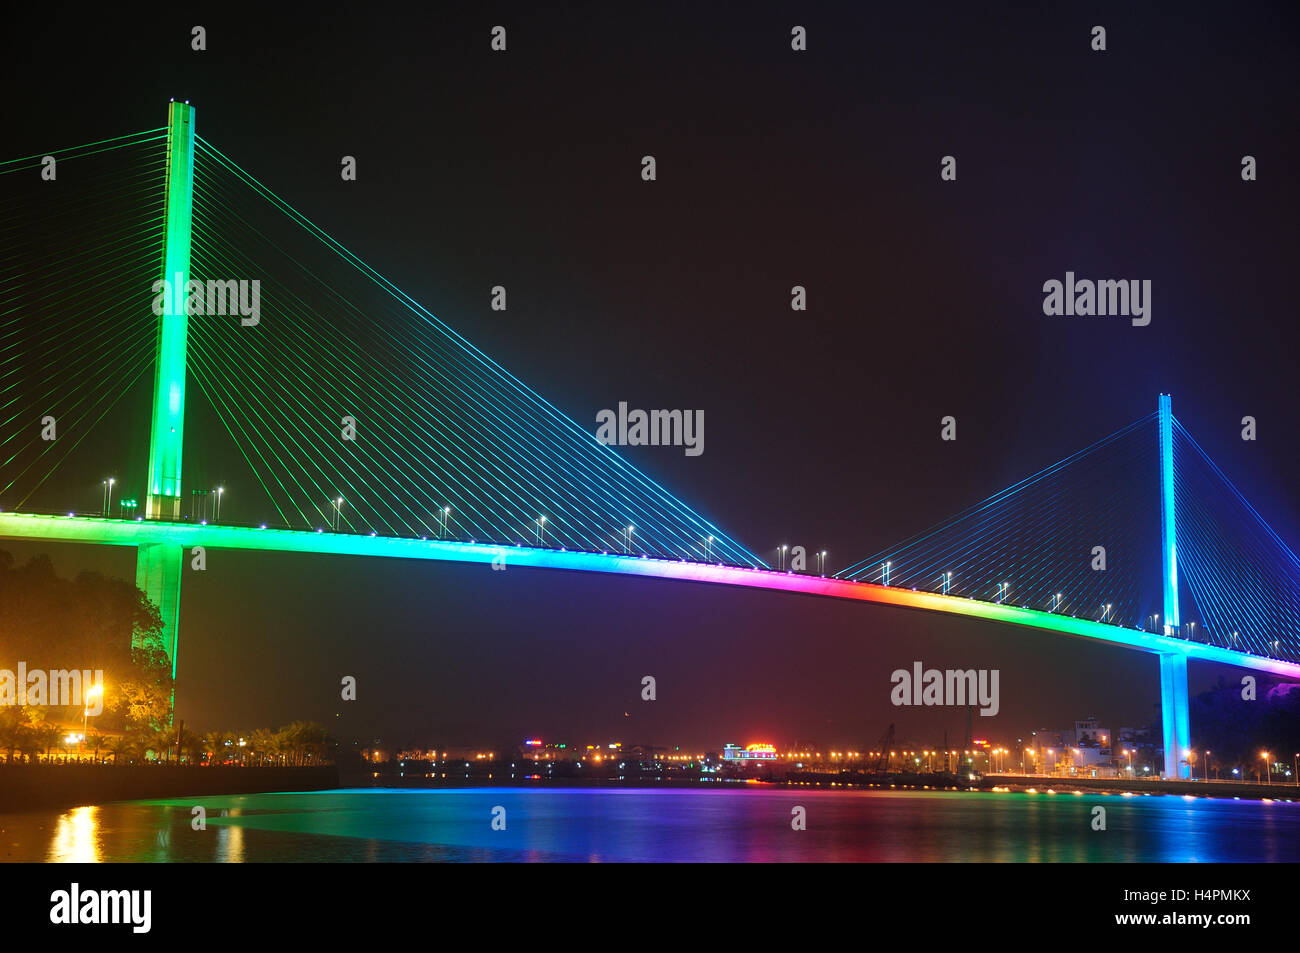 Il Bai Chay Bridge in HaLong Vietnam illuminato con rainbow illuminazione colorata di notte riflettendo nella Baia di Ha Long. Foto Stock